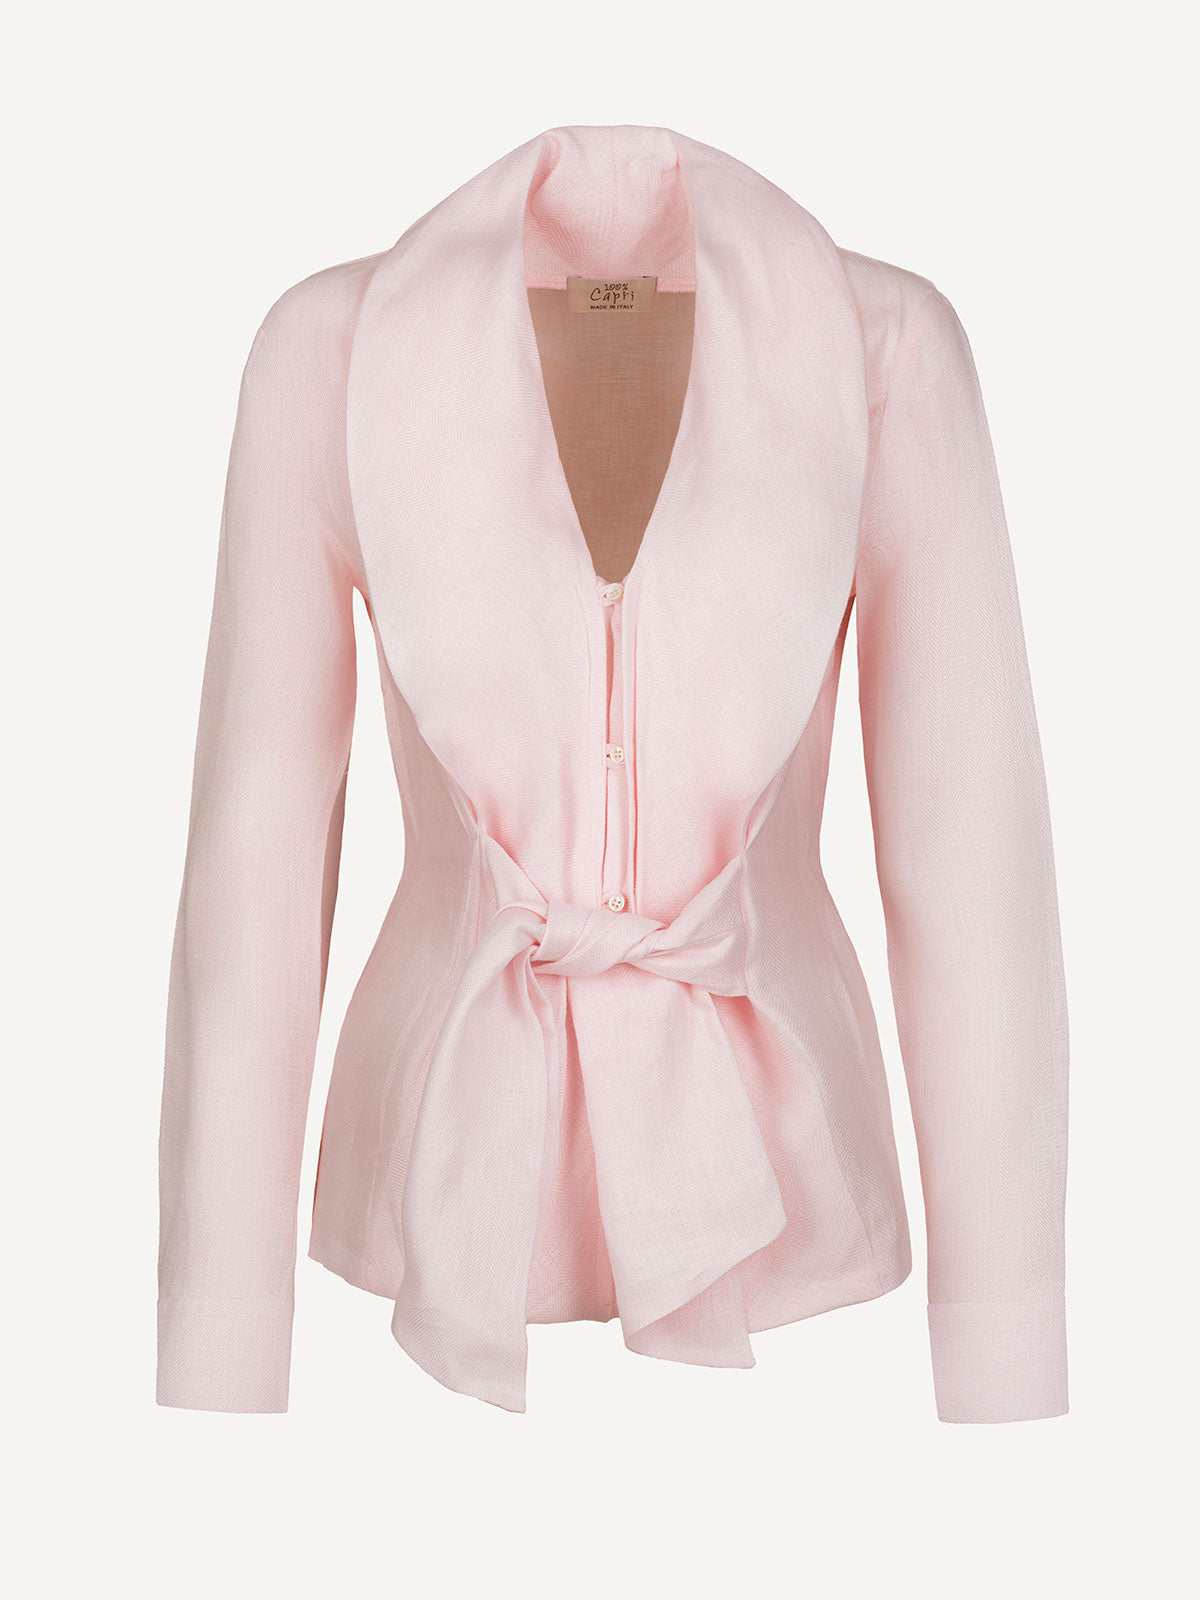 Camicia fiocco pink front 100% Capri